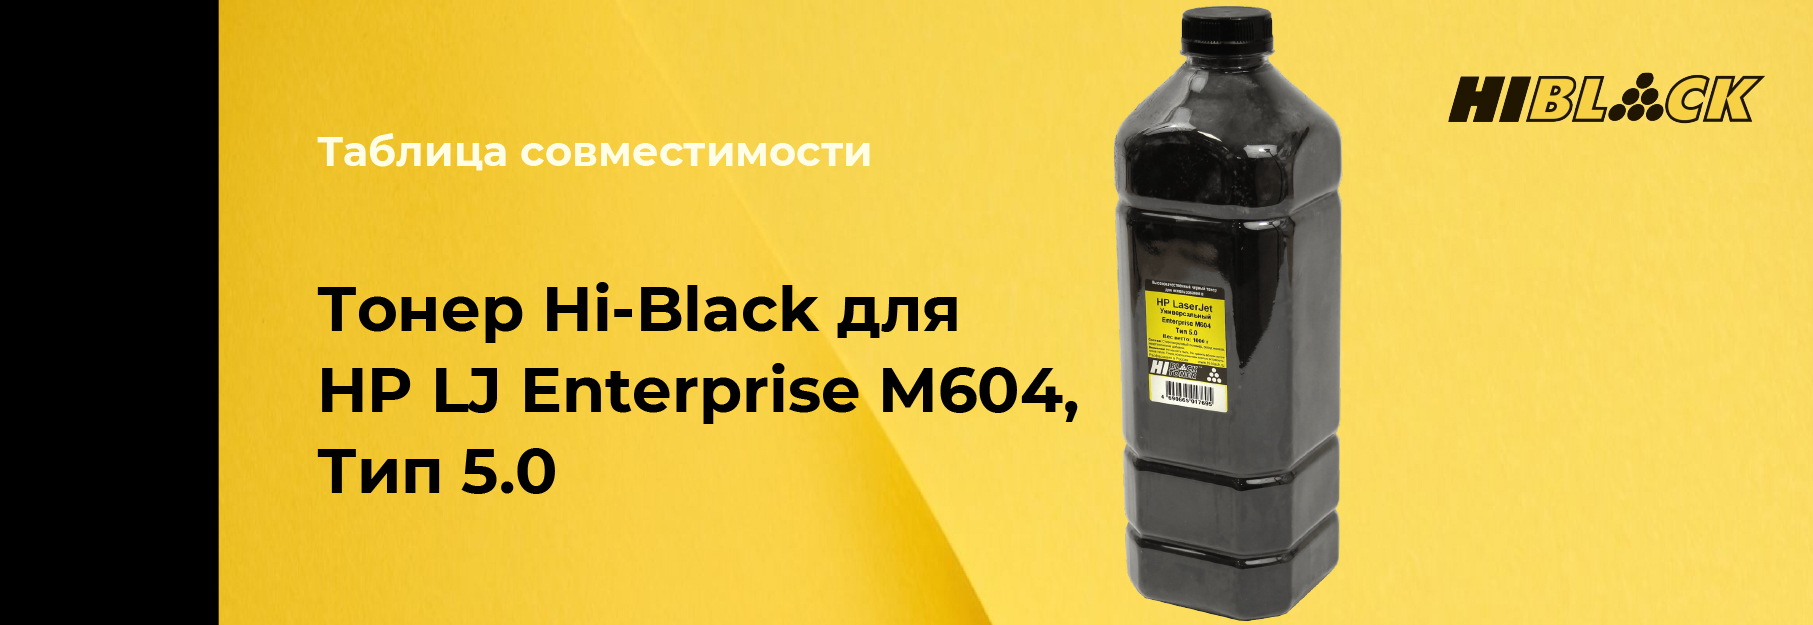 tablica-sovmestimosti-Hi-Black-HP-LJ-M604,-type5-0.jpg